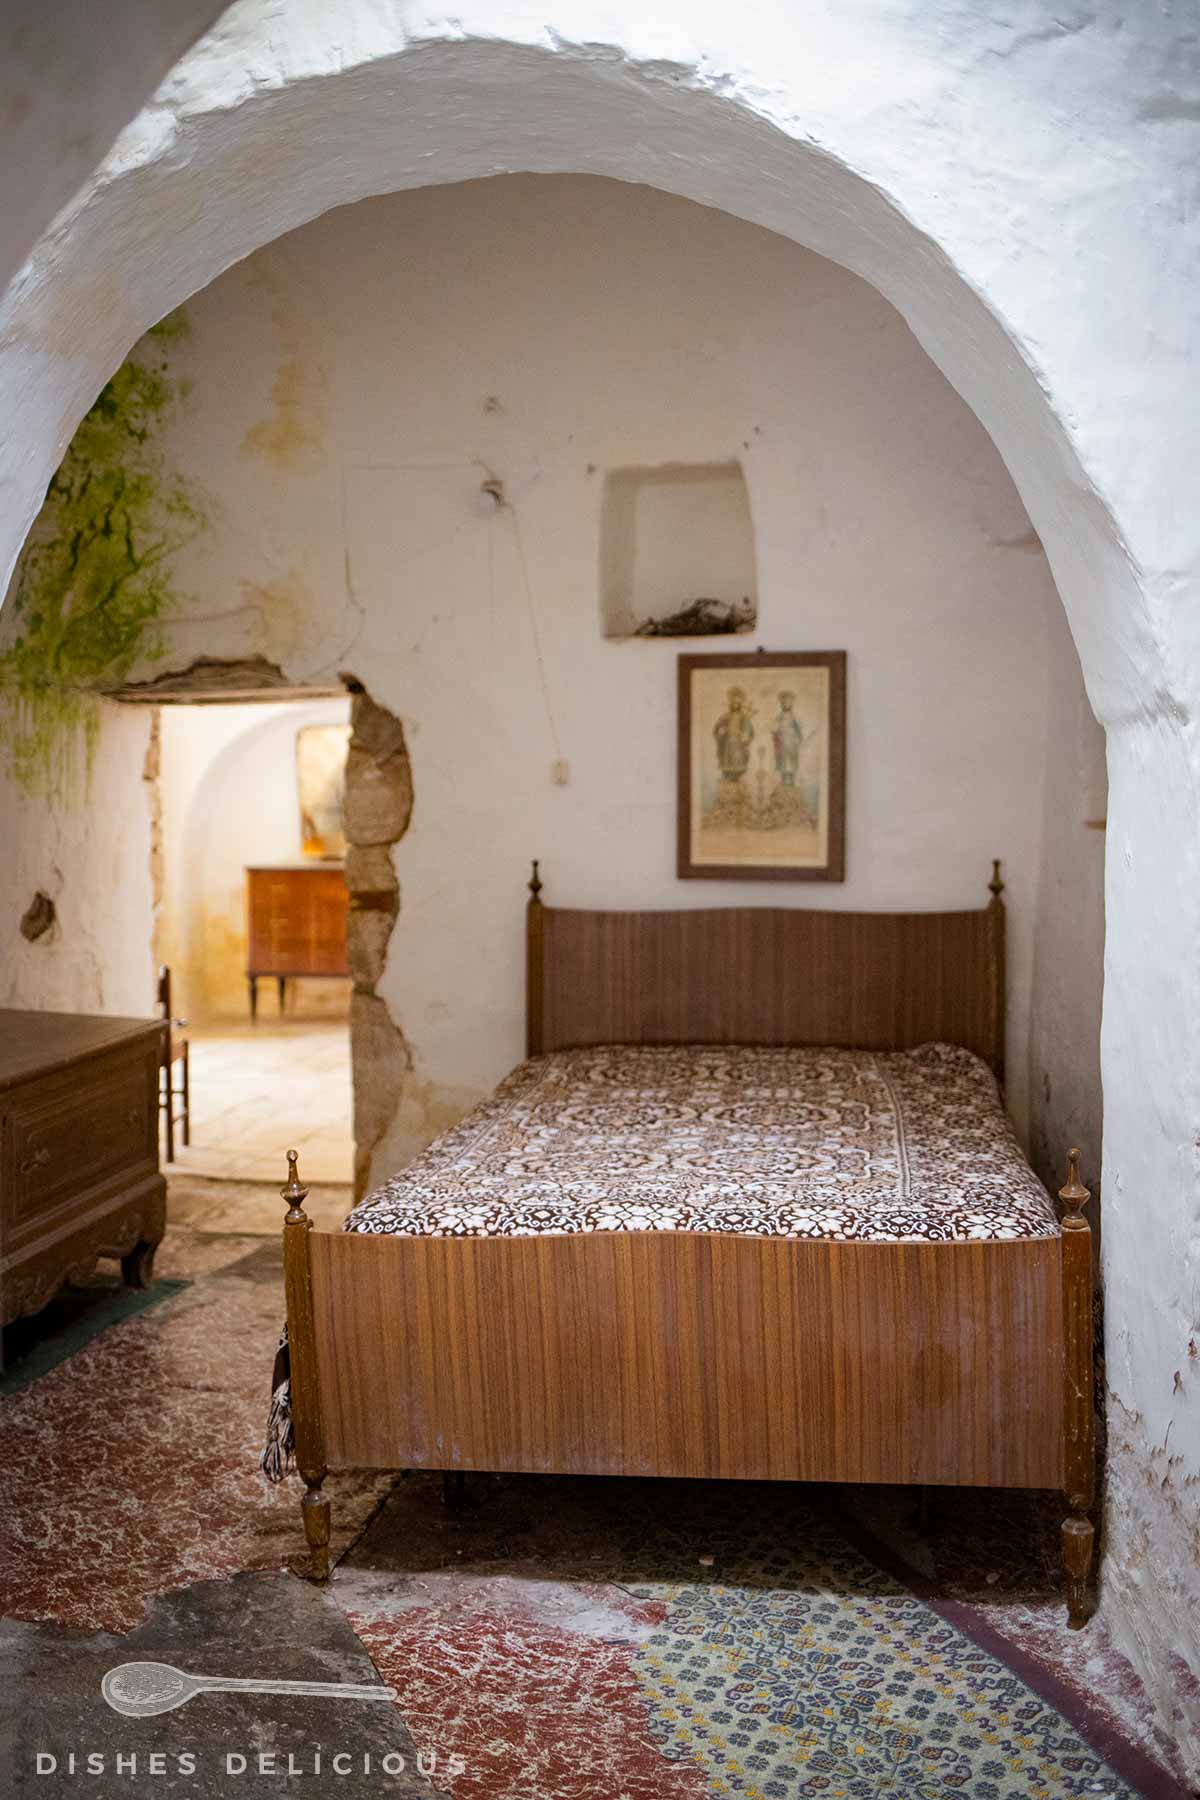 Ein Bett im Innenraum eines Trullo.